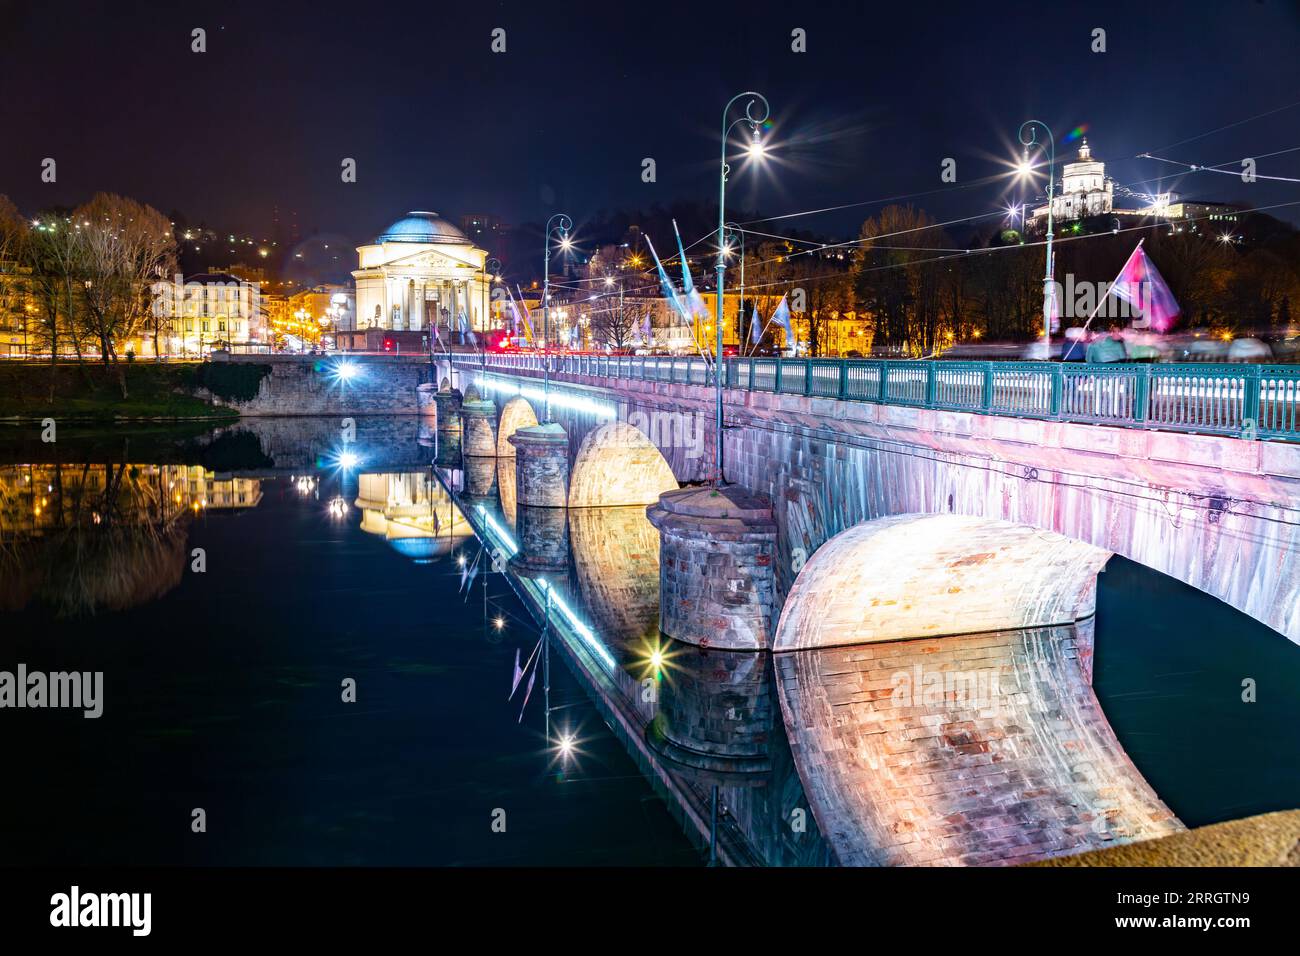 Torino, Italia - 27 2022 marzo: Il Ponte Vittorio Emanuele i è un ponte che attraversa il po, nella zona orientale del ​​the centro di Torino. Foto Stock